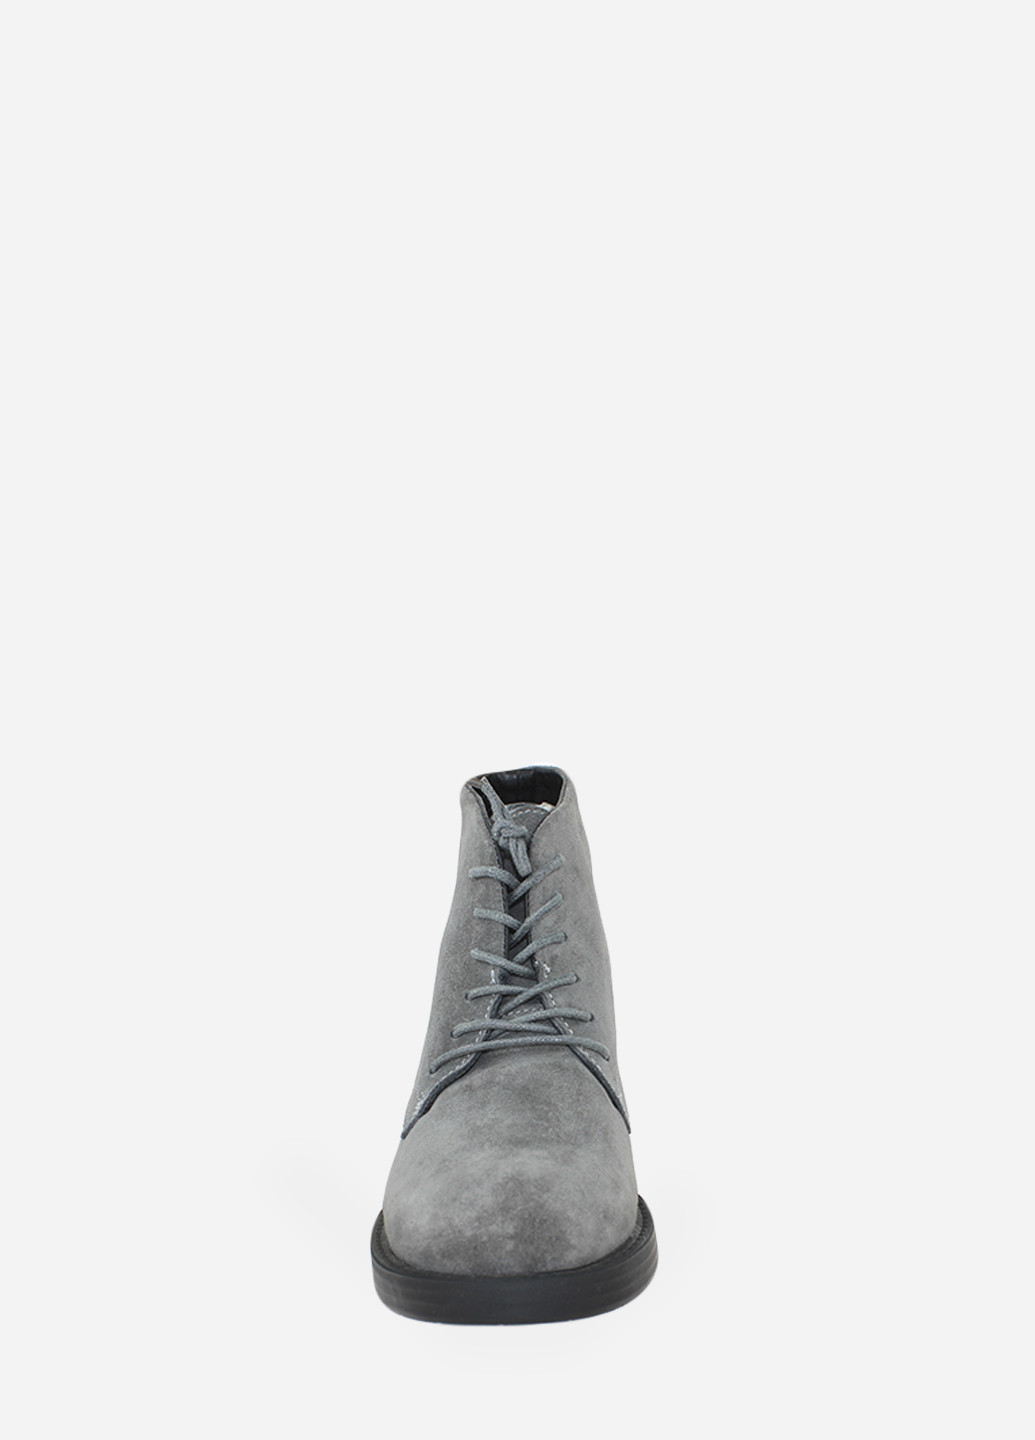 Осенние ботинки rdt142-11 серый Daragani из натуральной замши